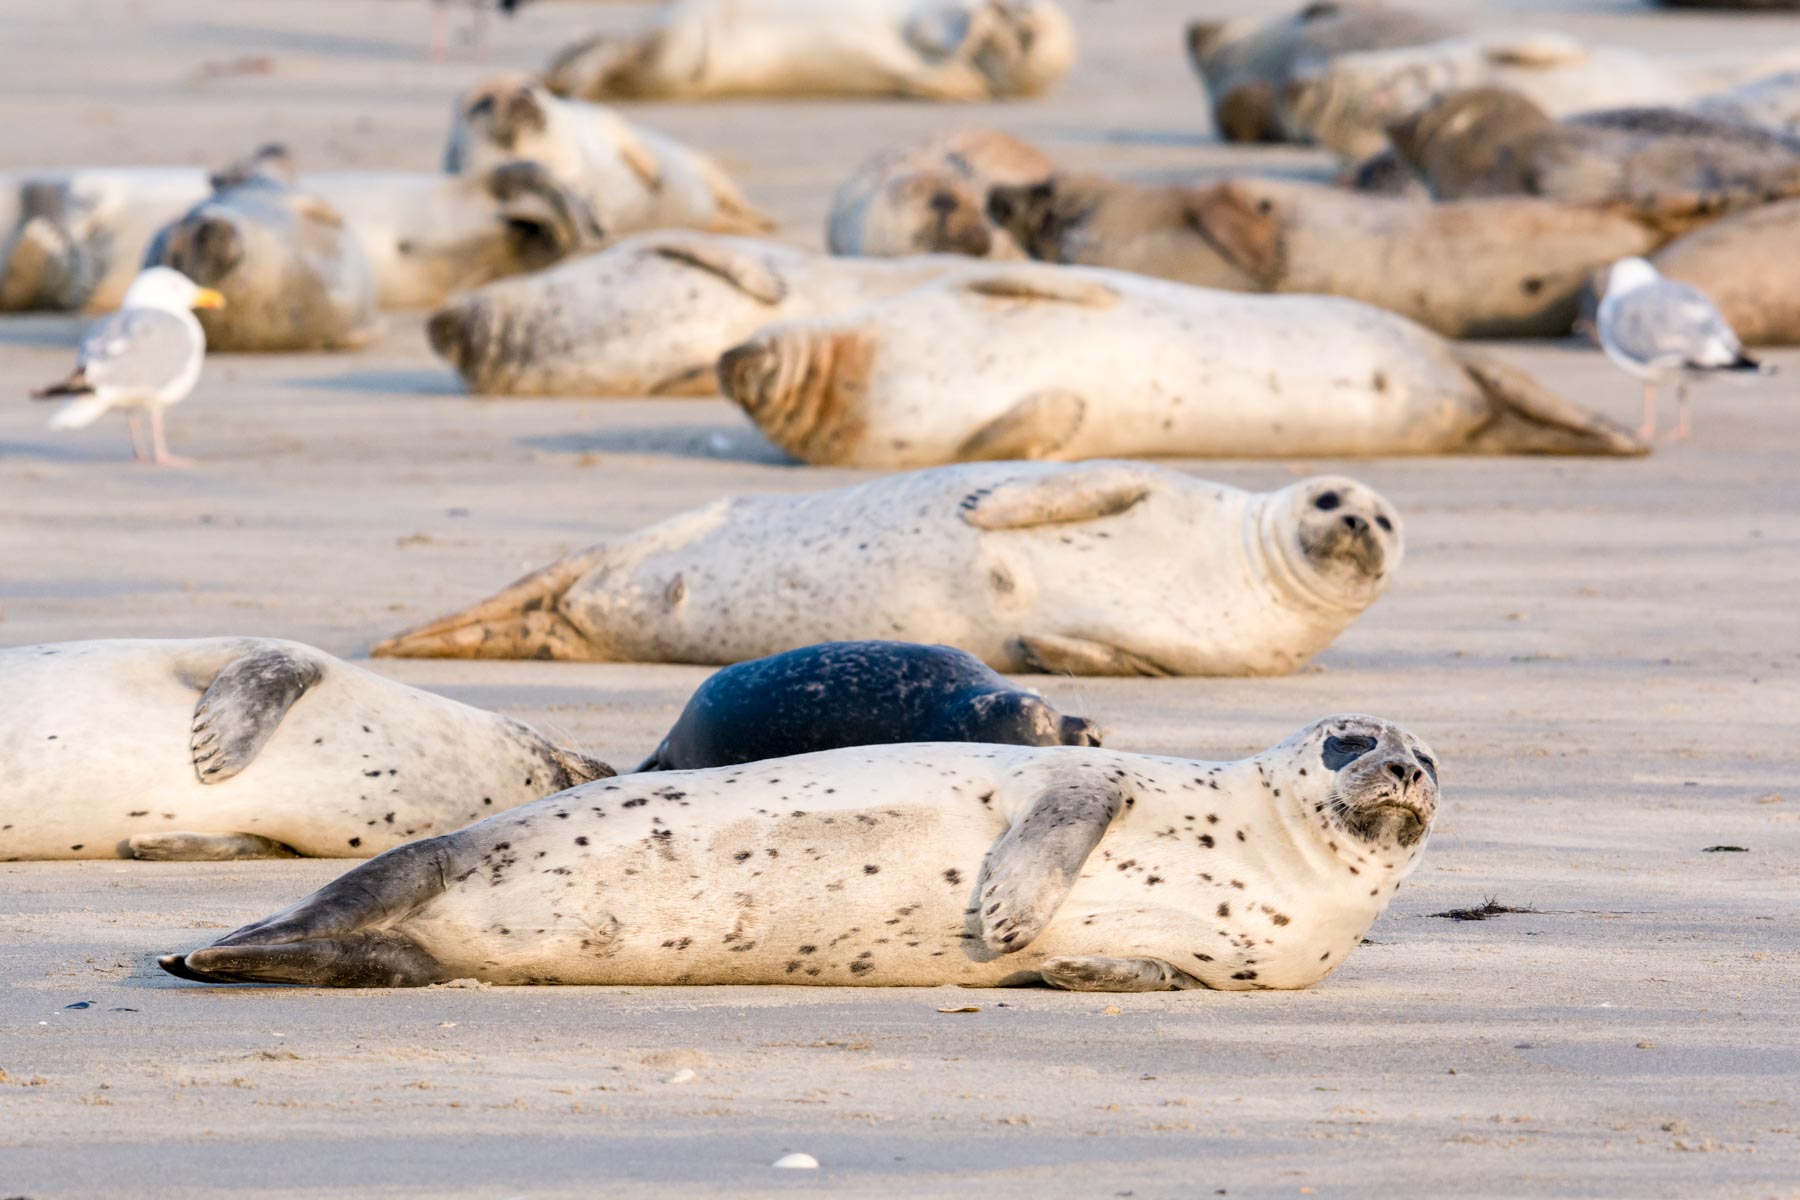 Where to see seals at the Oregon coast
Oregon coast seals